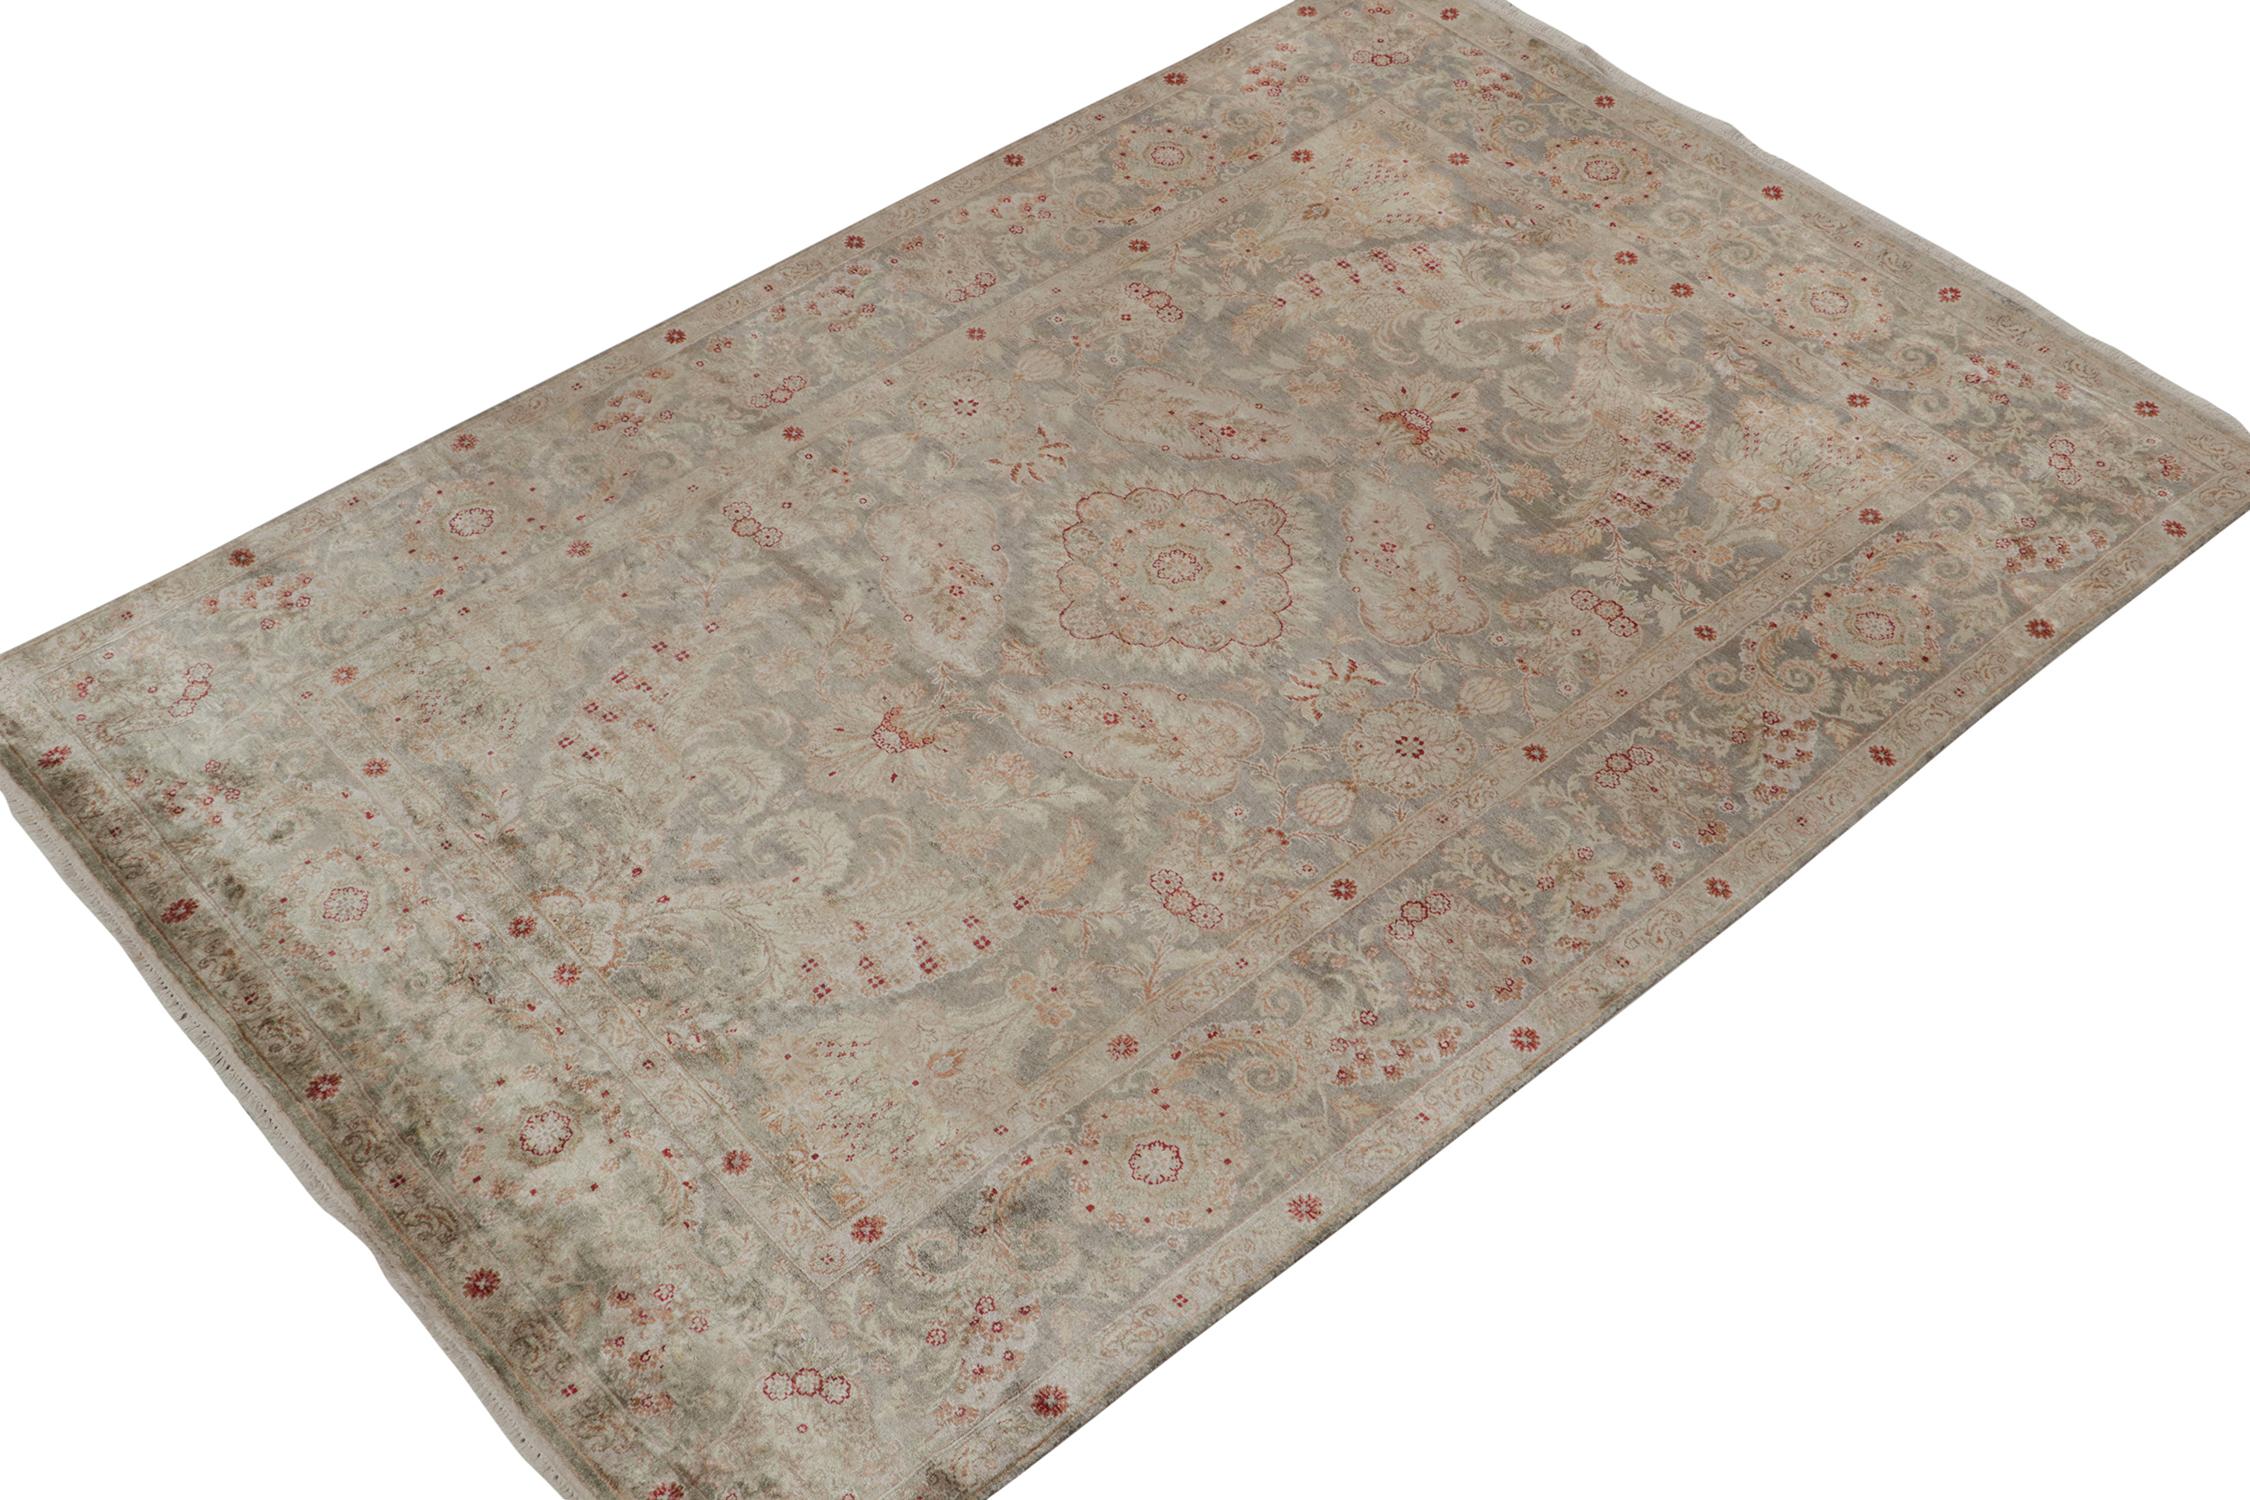 Ein 6x9 Teppich, inspiriert von traditionellen Teppichstilen, aus der Modern Classics Collection'S von Rug & Kilim. Handgeknüpft aus Wolle, die ein Zusammenspiel von opulenten Tönen in floralen Mustern mit klassischer Anmut spielt.
Weiter zum